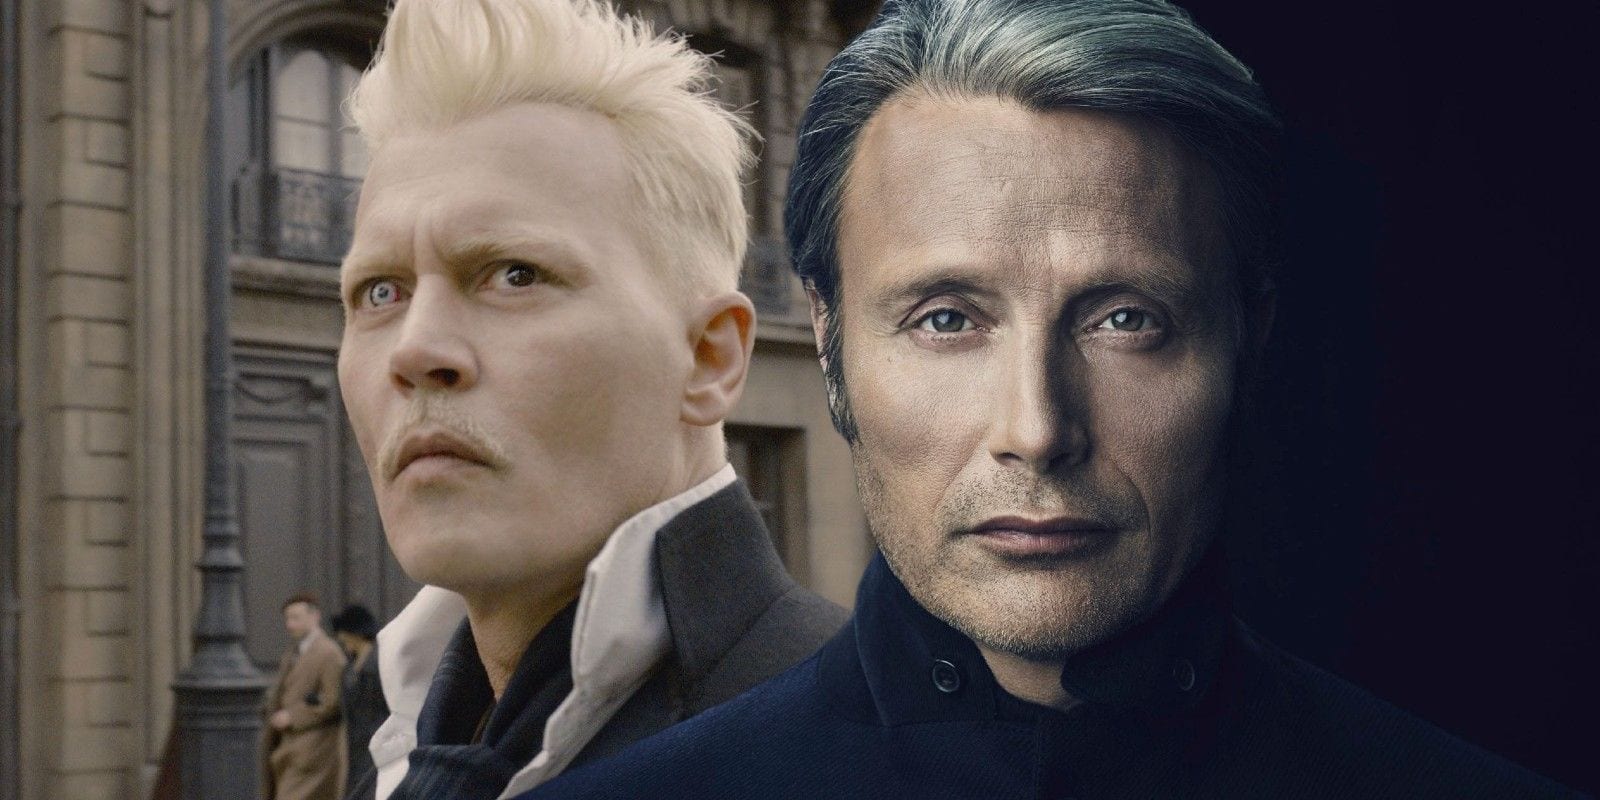 Animali Fantastici 3: Mads Mikkelsen sostituirà Johnny Depp